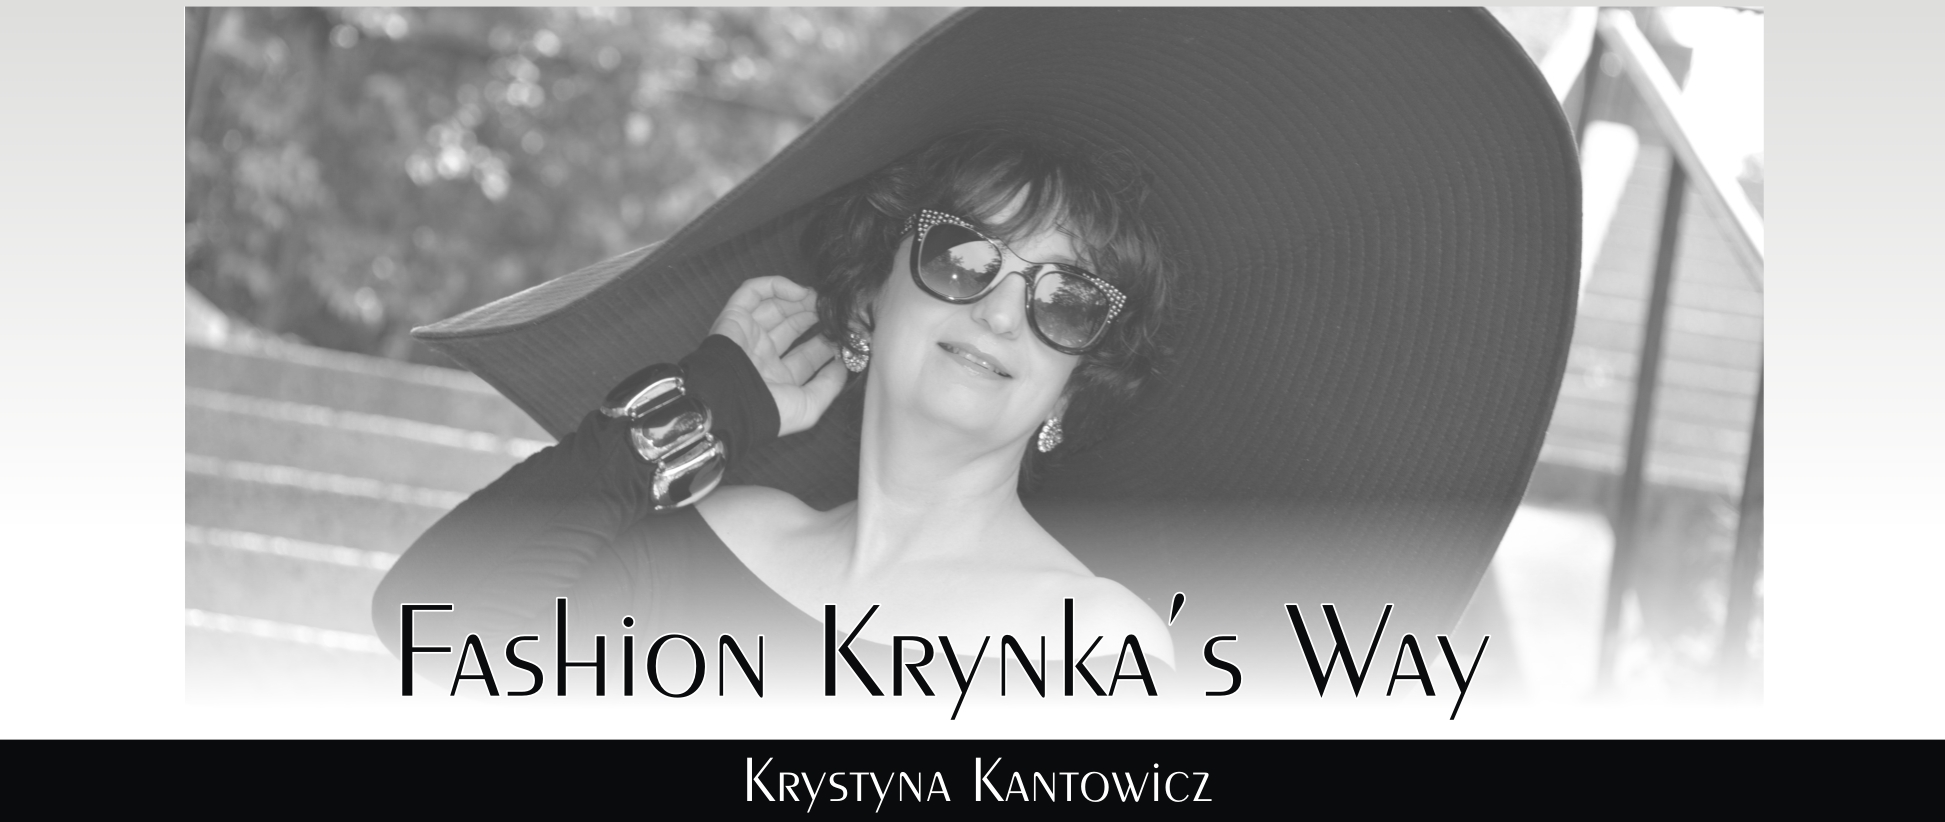 Fashion Krynka's Way